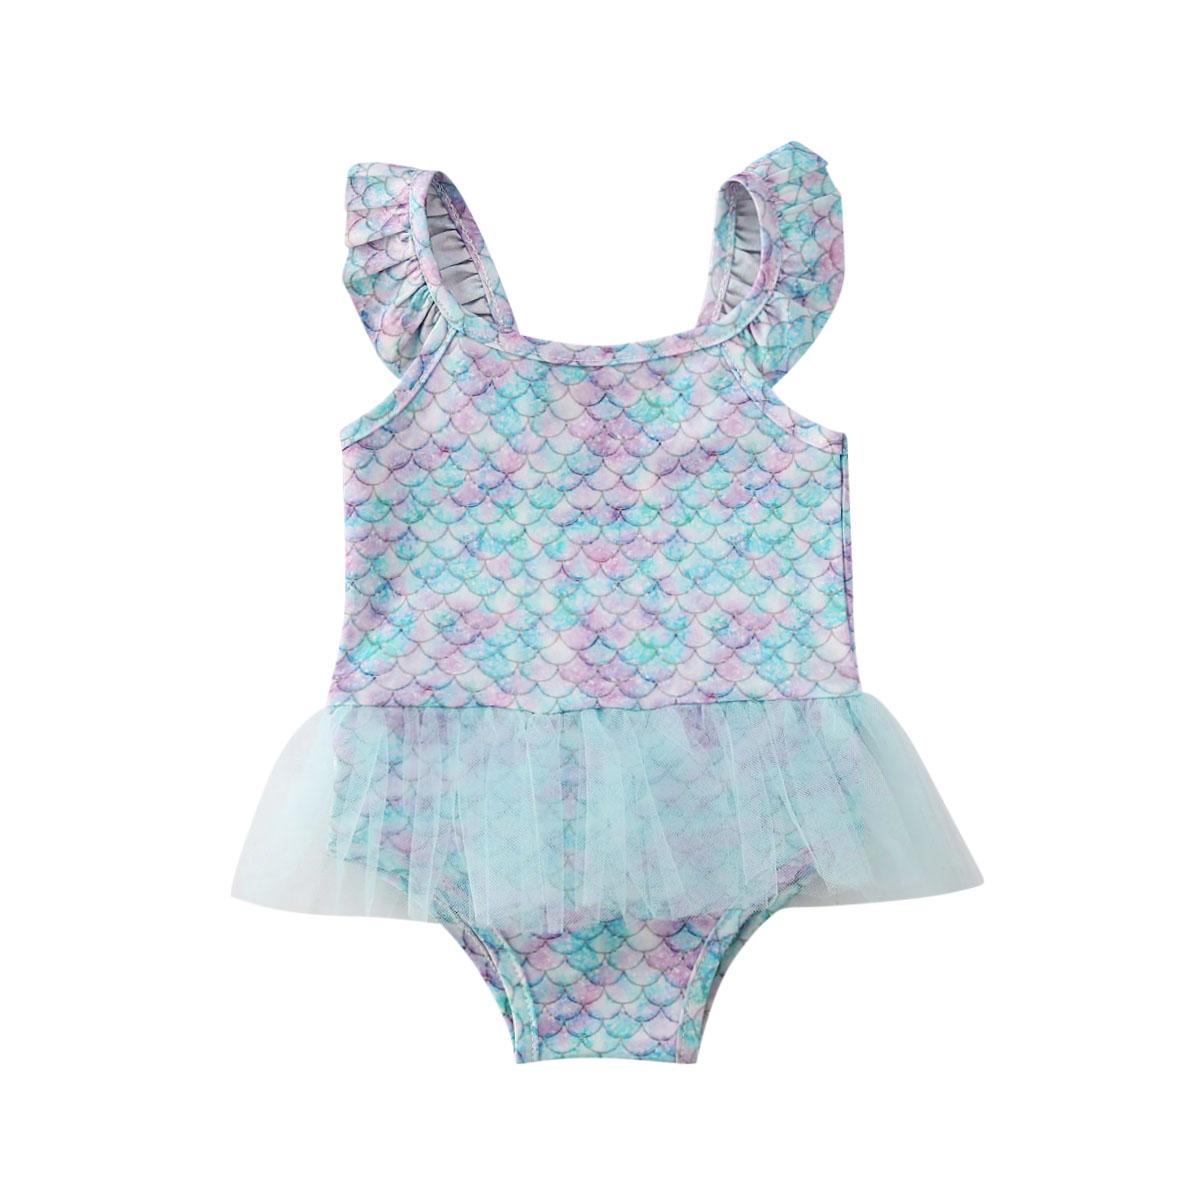 Little Fashionistas Zeemeerminzwemkleding voor babymeisjes, zwemkleding uit één stuk met visschaal, mouwloos badpak met ruches en tuturok